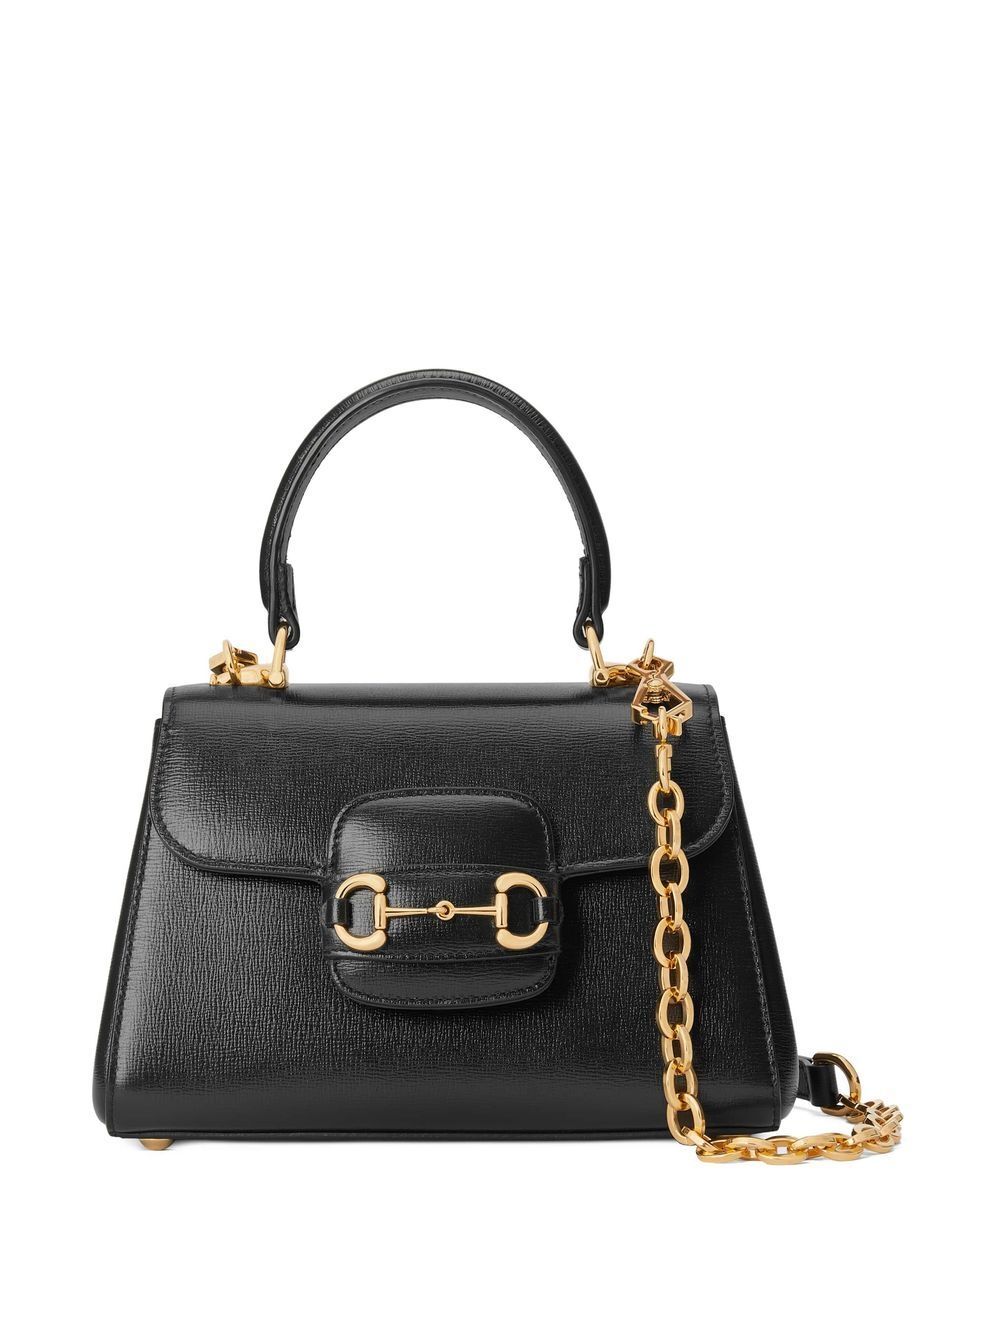 Gucci Horsebit 1955 top handle bag - Black